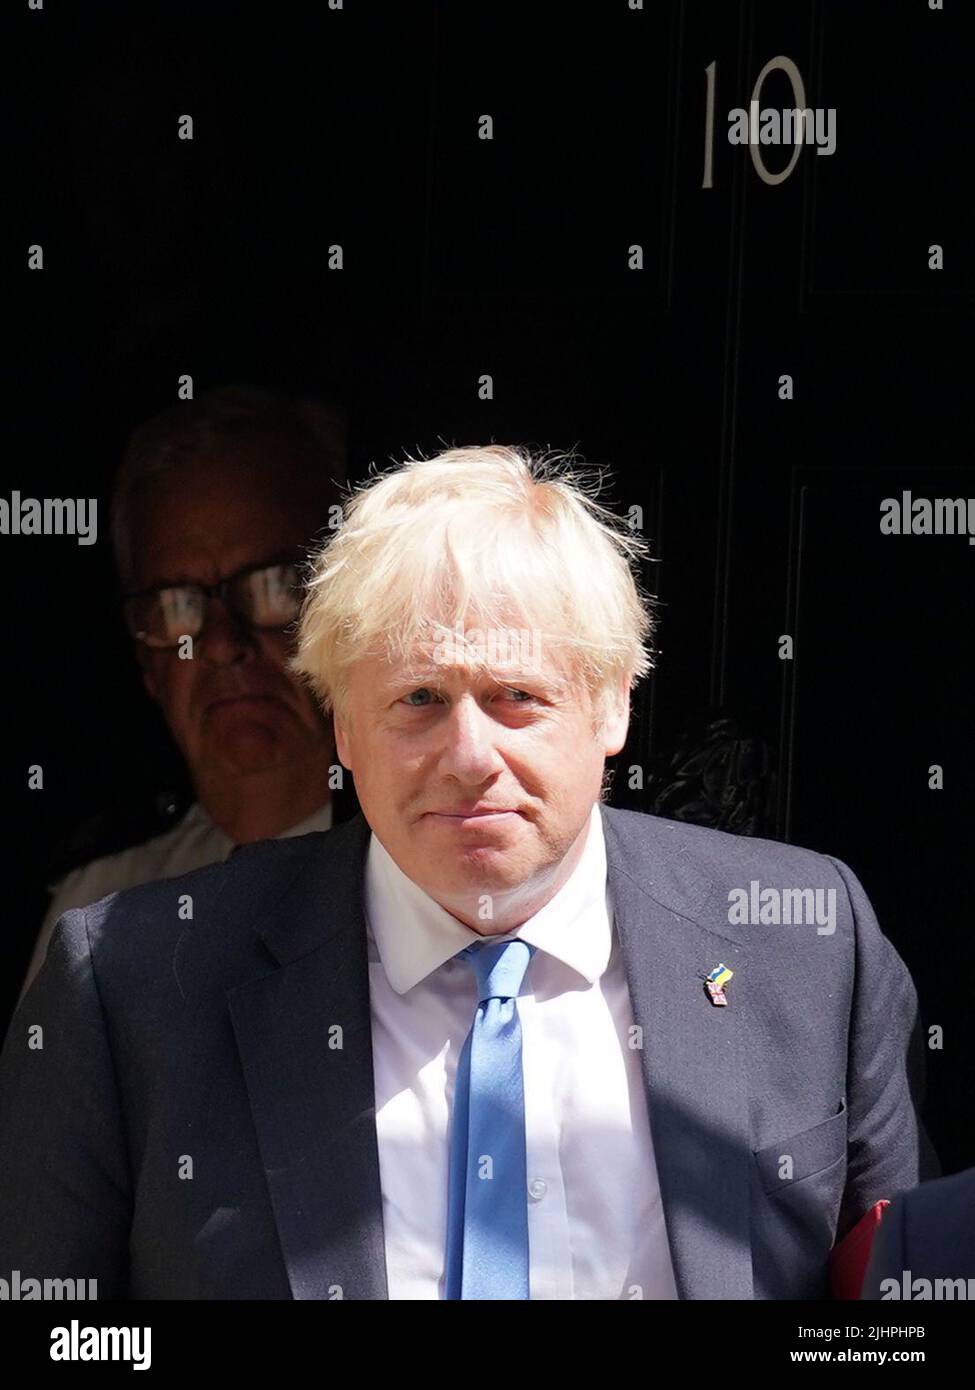 Premierminister Boris Johnson verlässt 10 Downing Street, Westminster, London, um an seinen letzten geplanten Fragen des Premierministers im Parlament teilzunehmen. Bilddatum: Mittwoch, 20. Juli 2022. Stockfoto